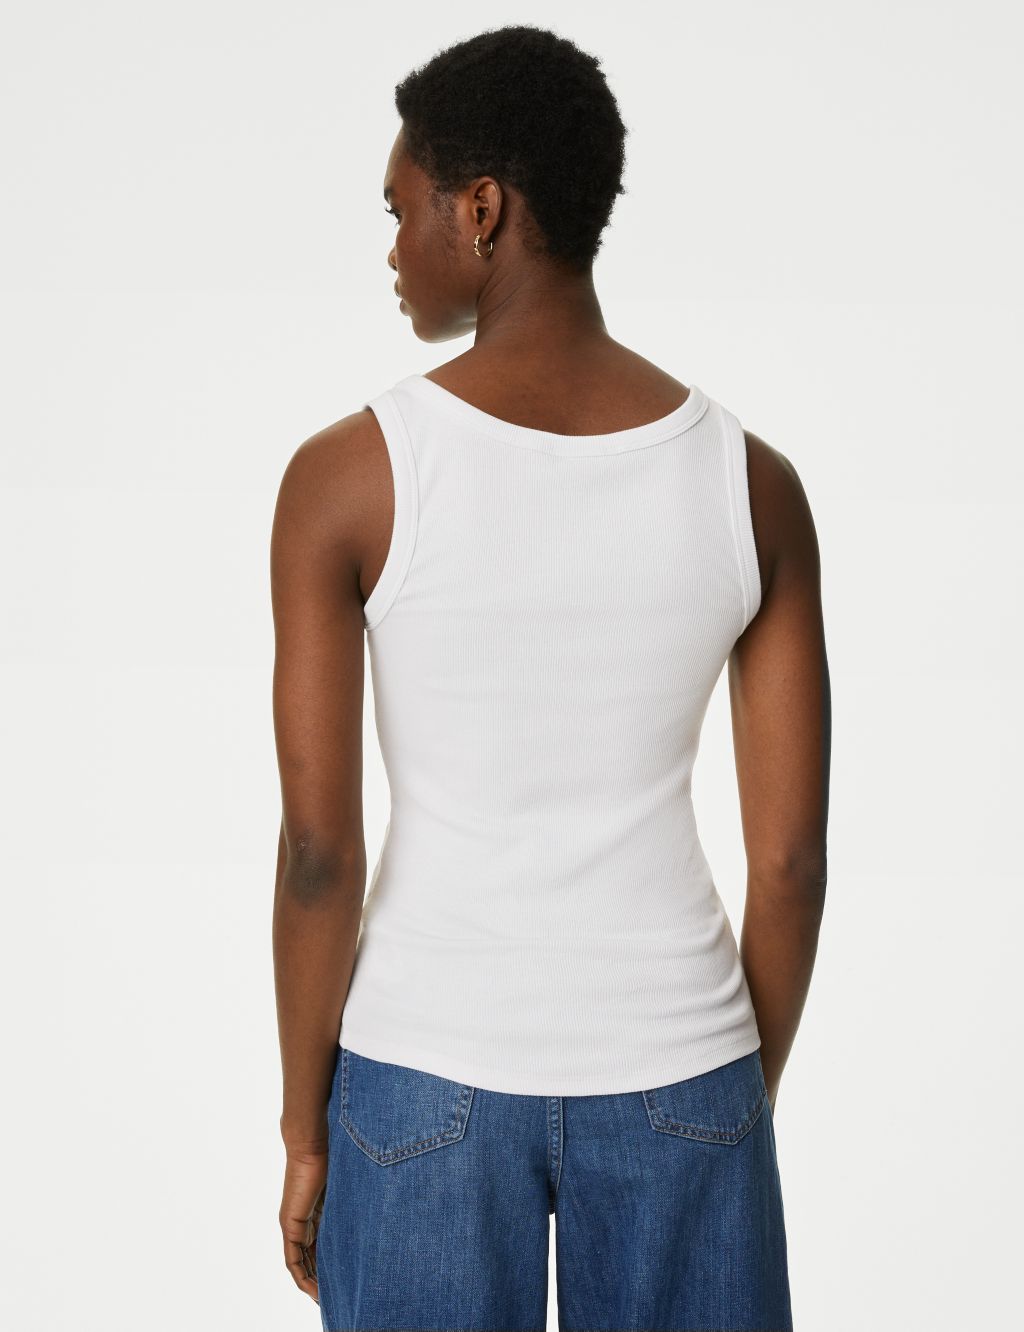 Cotton Rich Ribbed Slim Fit Vest Top image 5